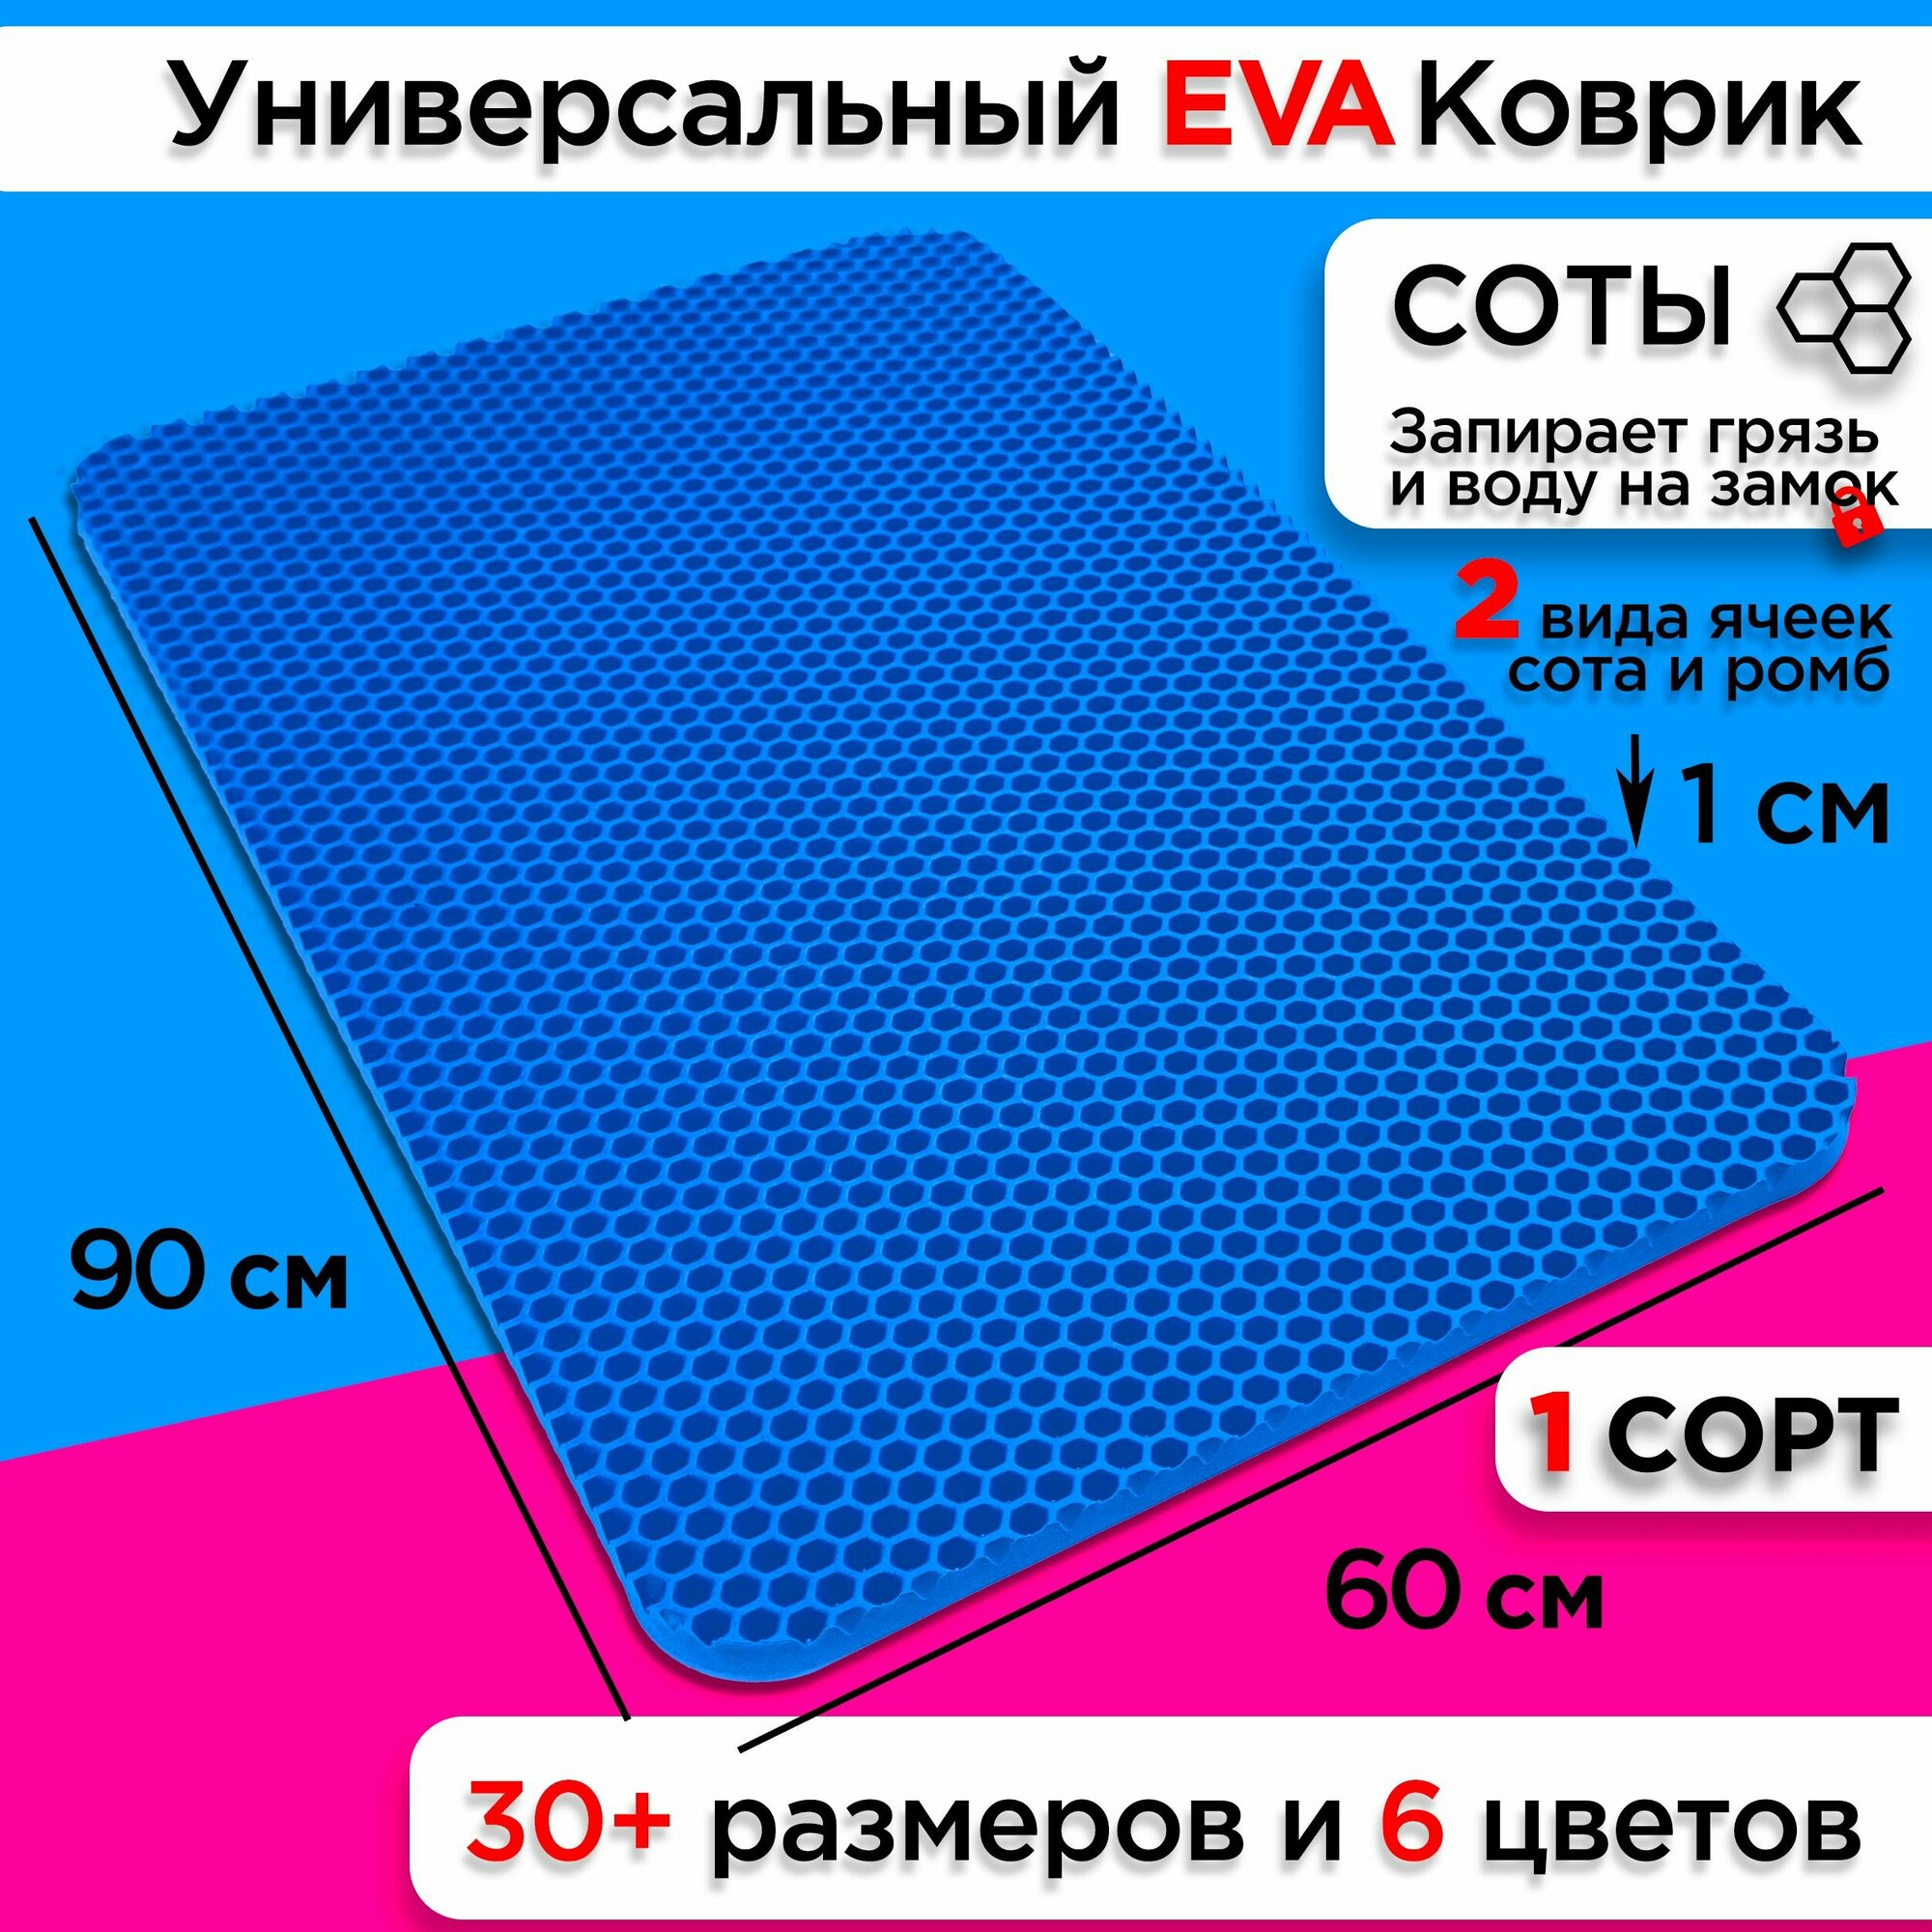 Коврик придверный EVA 90 х 60 см грязезащитный входной в прихожую износостойкий ковер на пол под обувь на кухню в шкаф